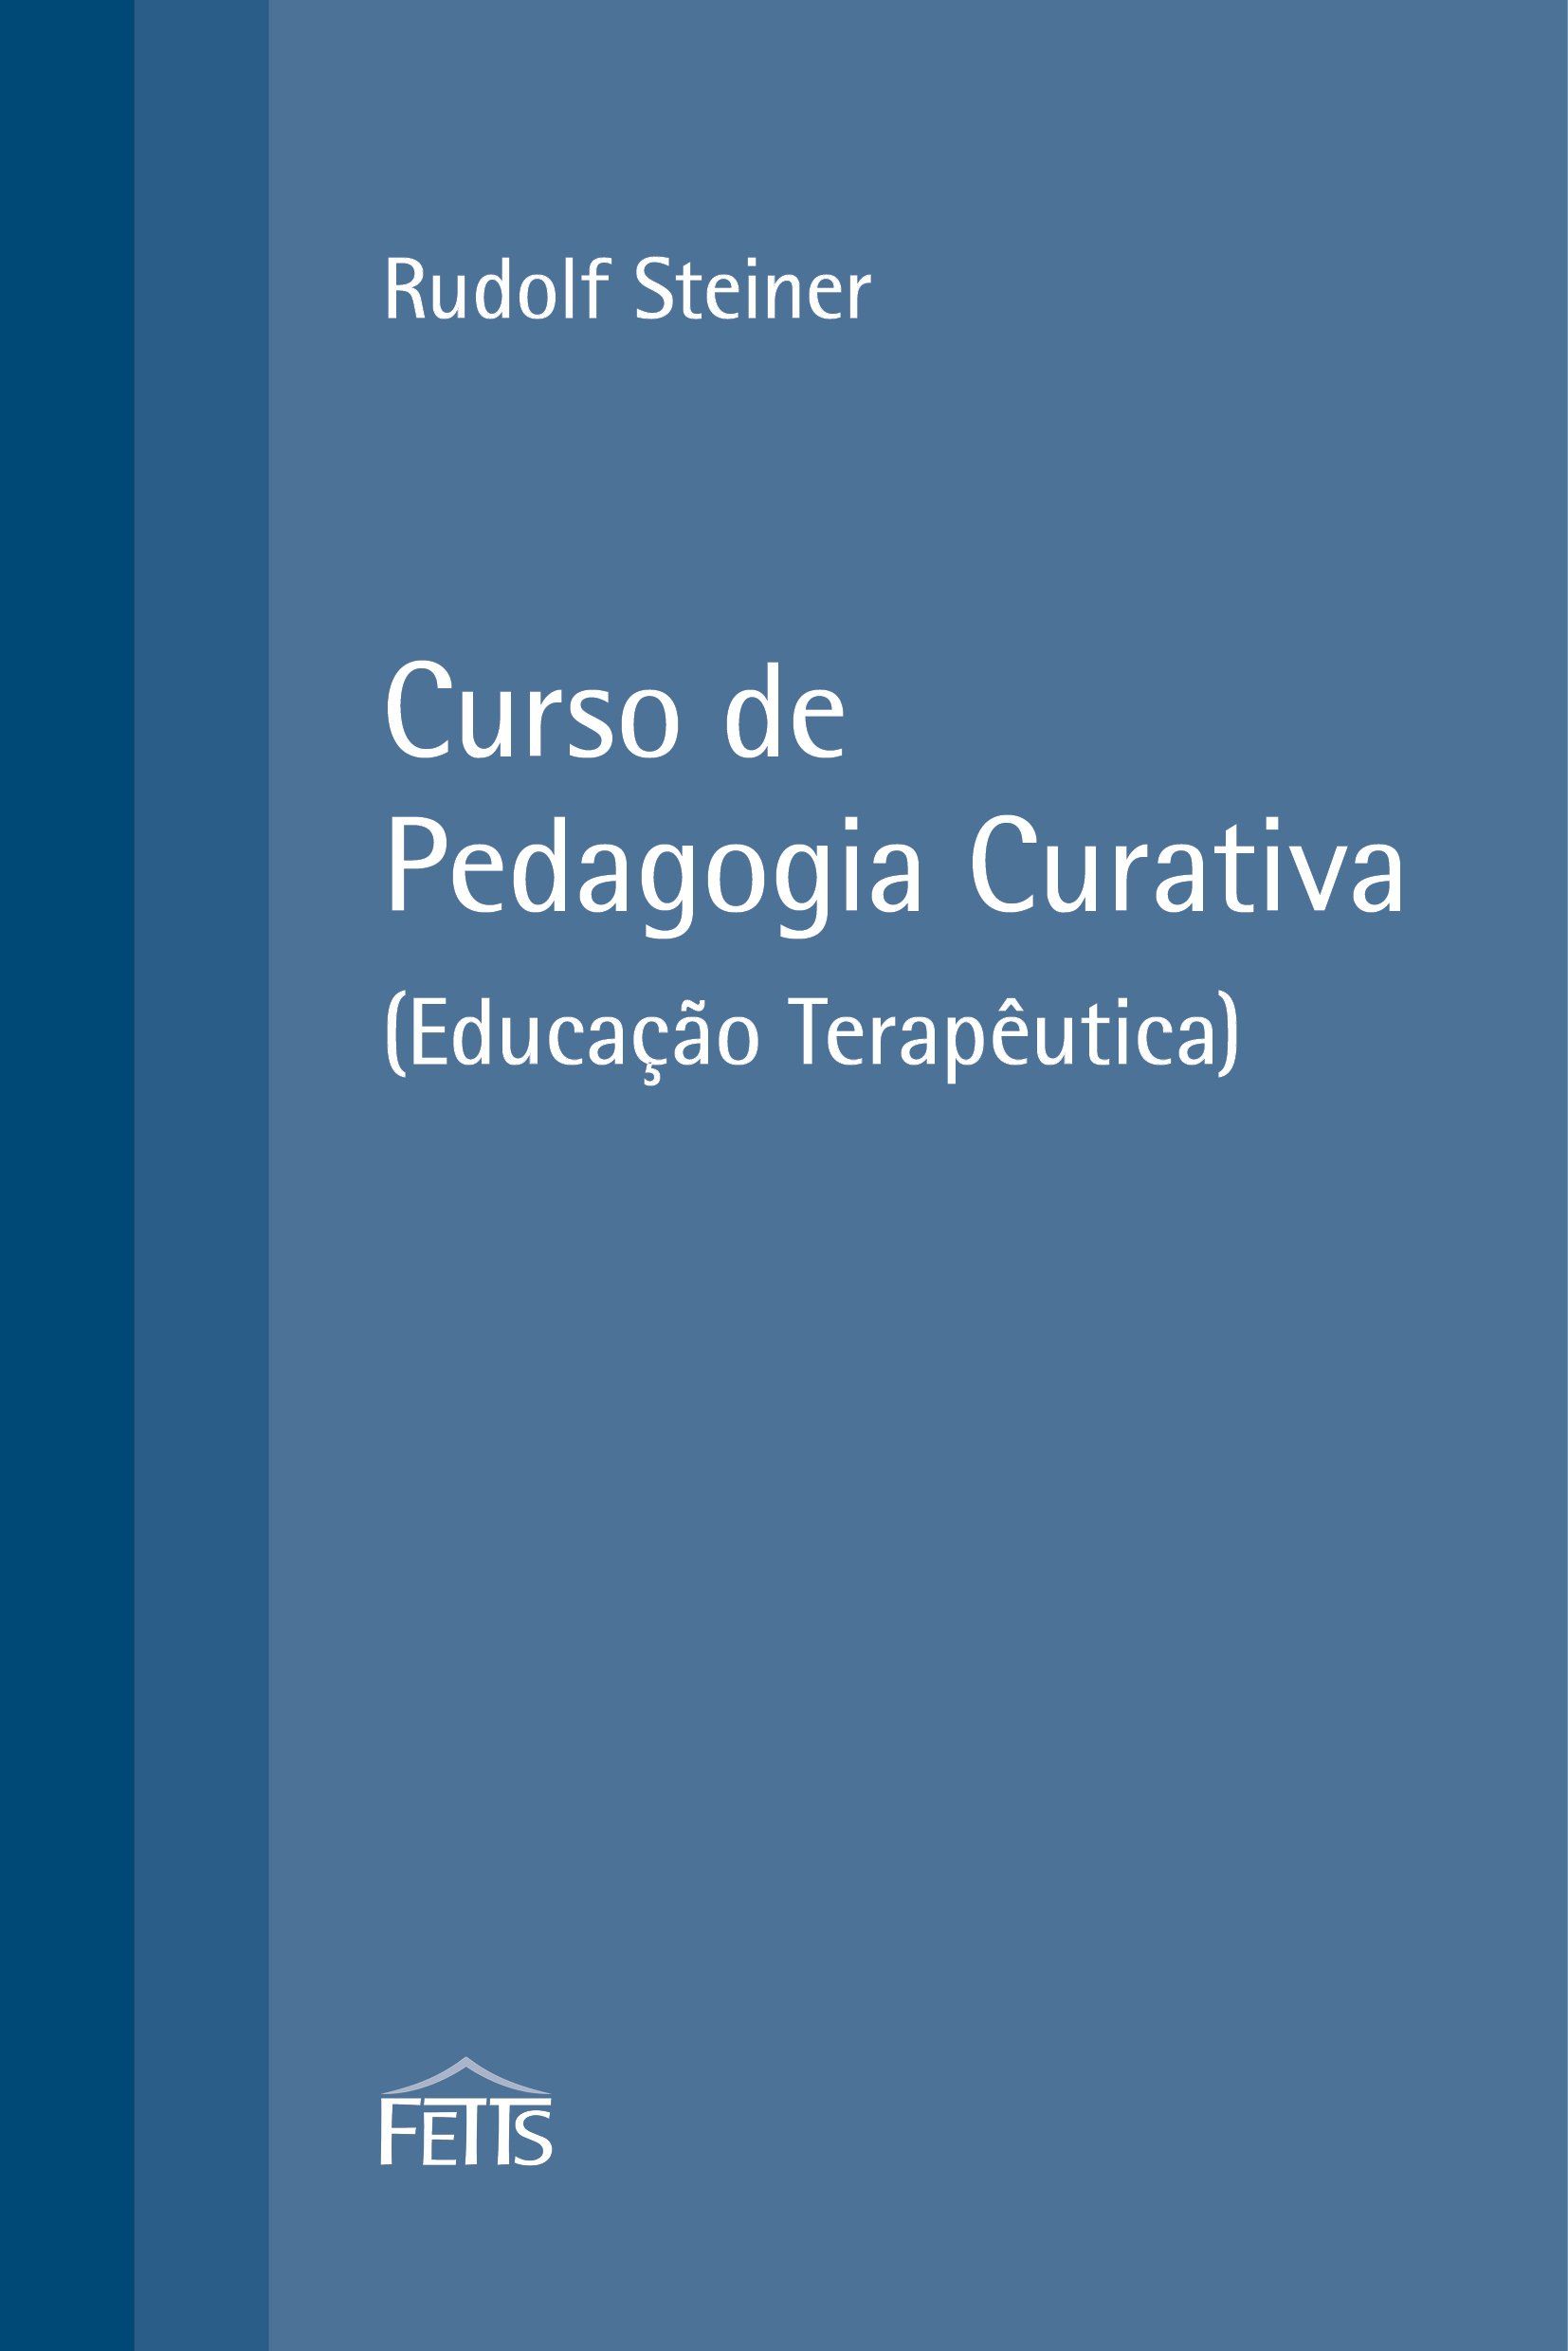 CURSO DE PEDAGOGIA CURATIVA - Rudolf Steiner